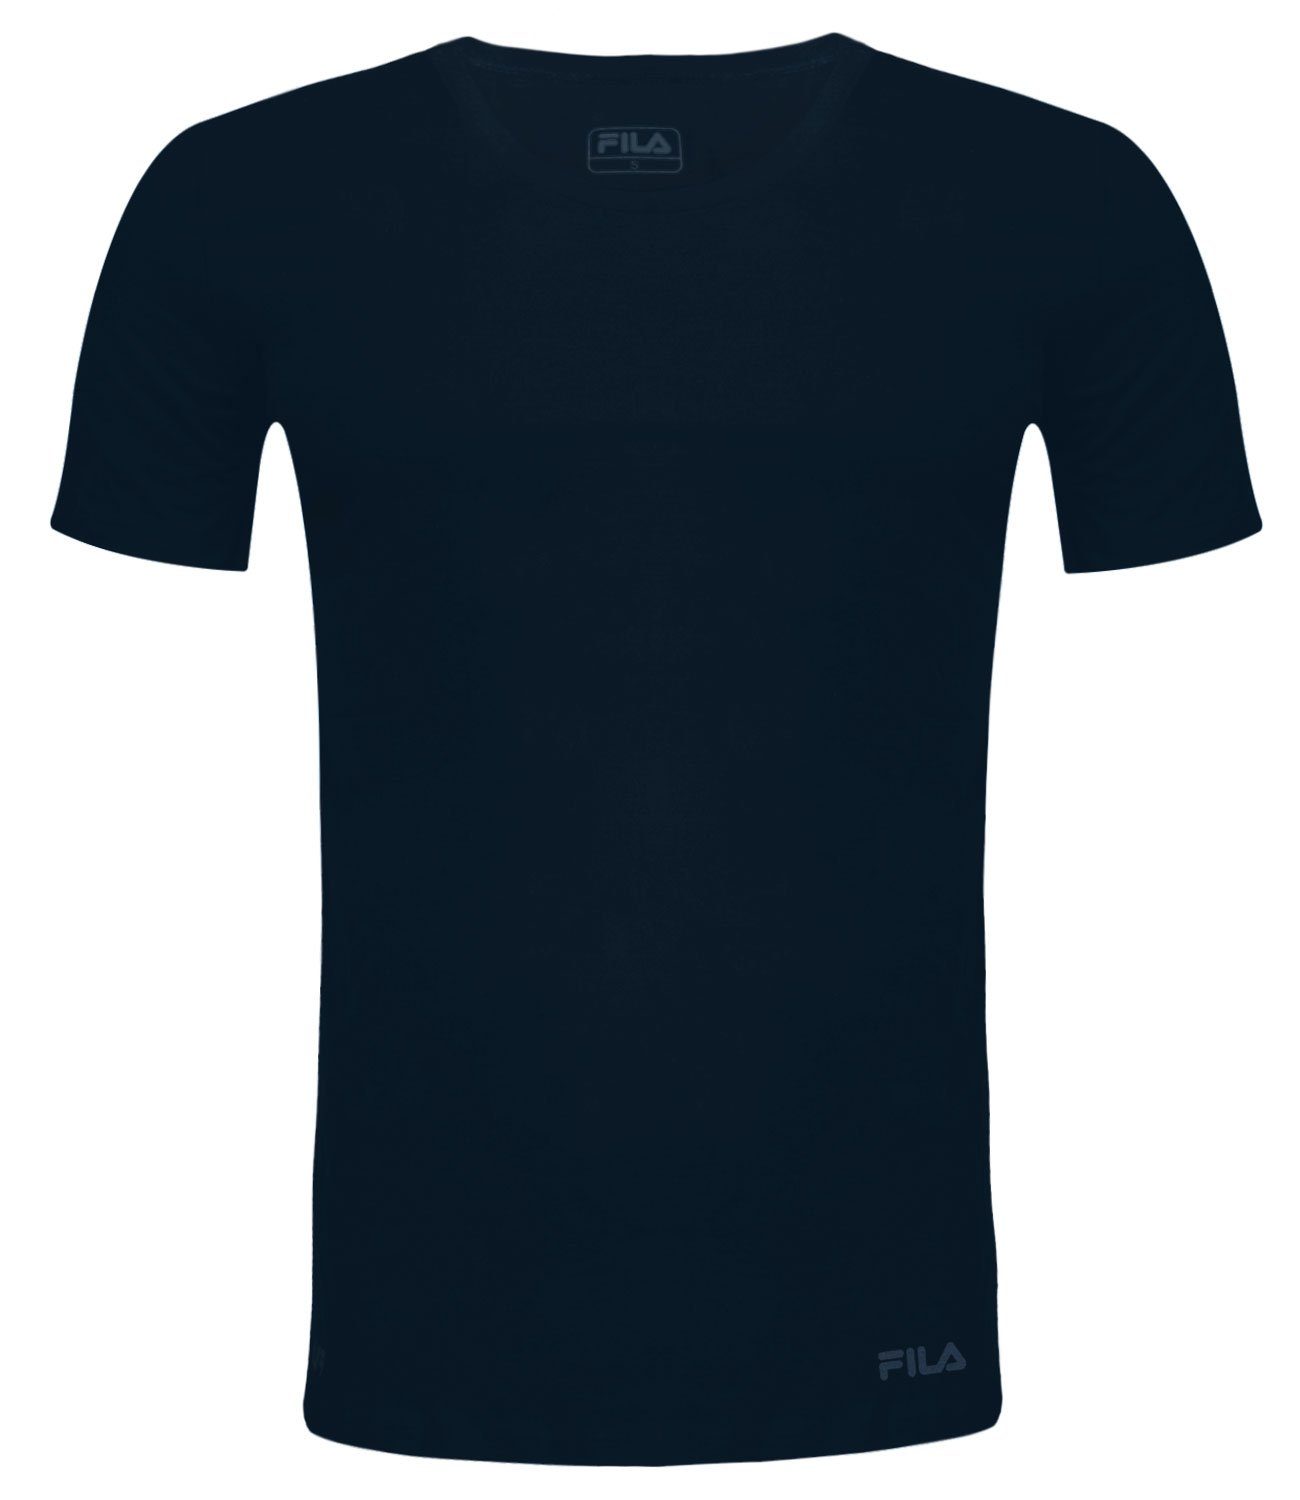 Round-Neck Baumwolljersey T-Shirt navy Fila 321 aus weichem